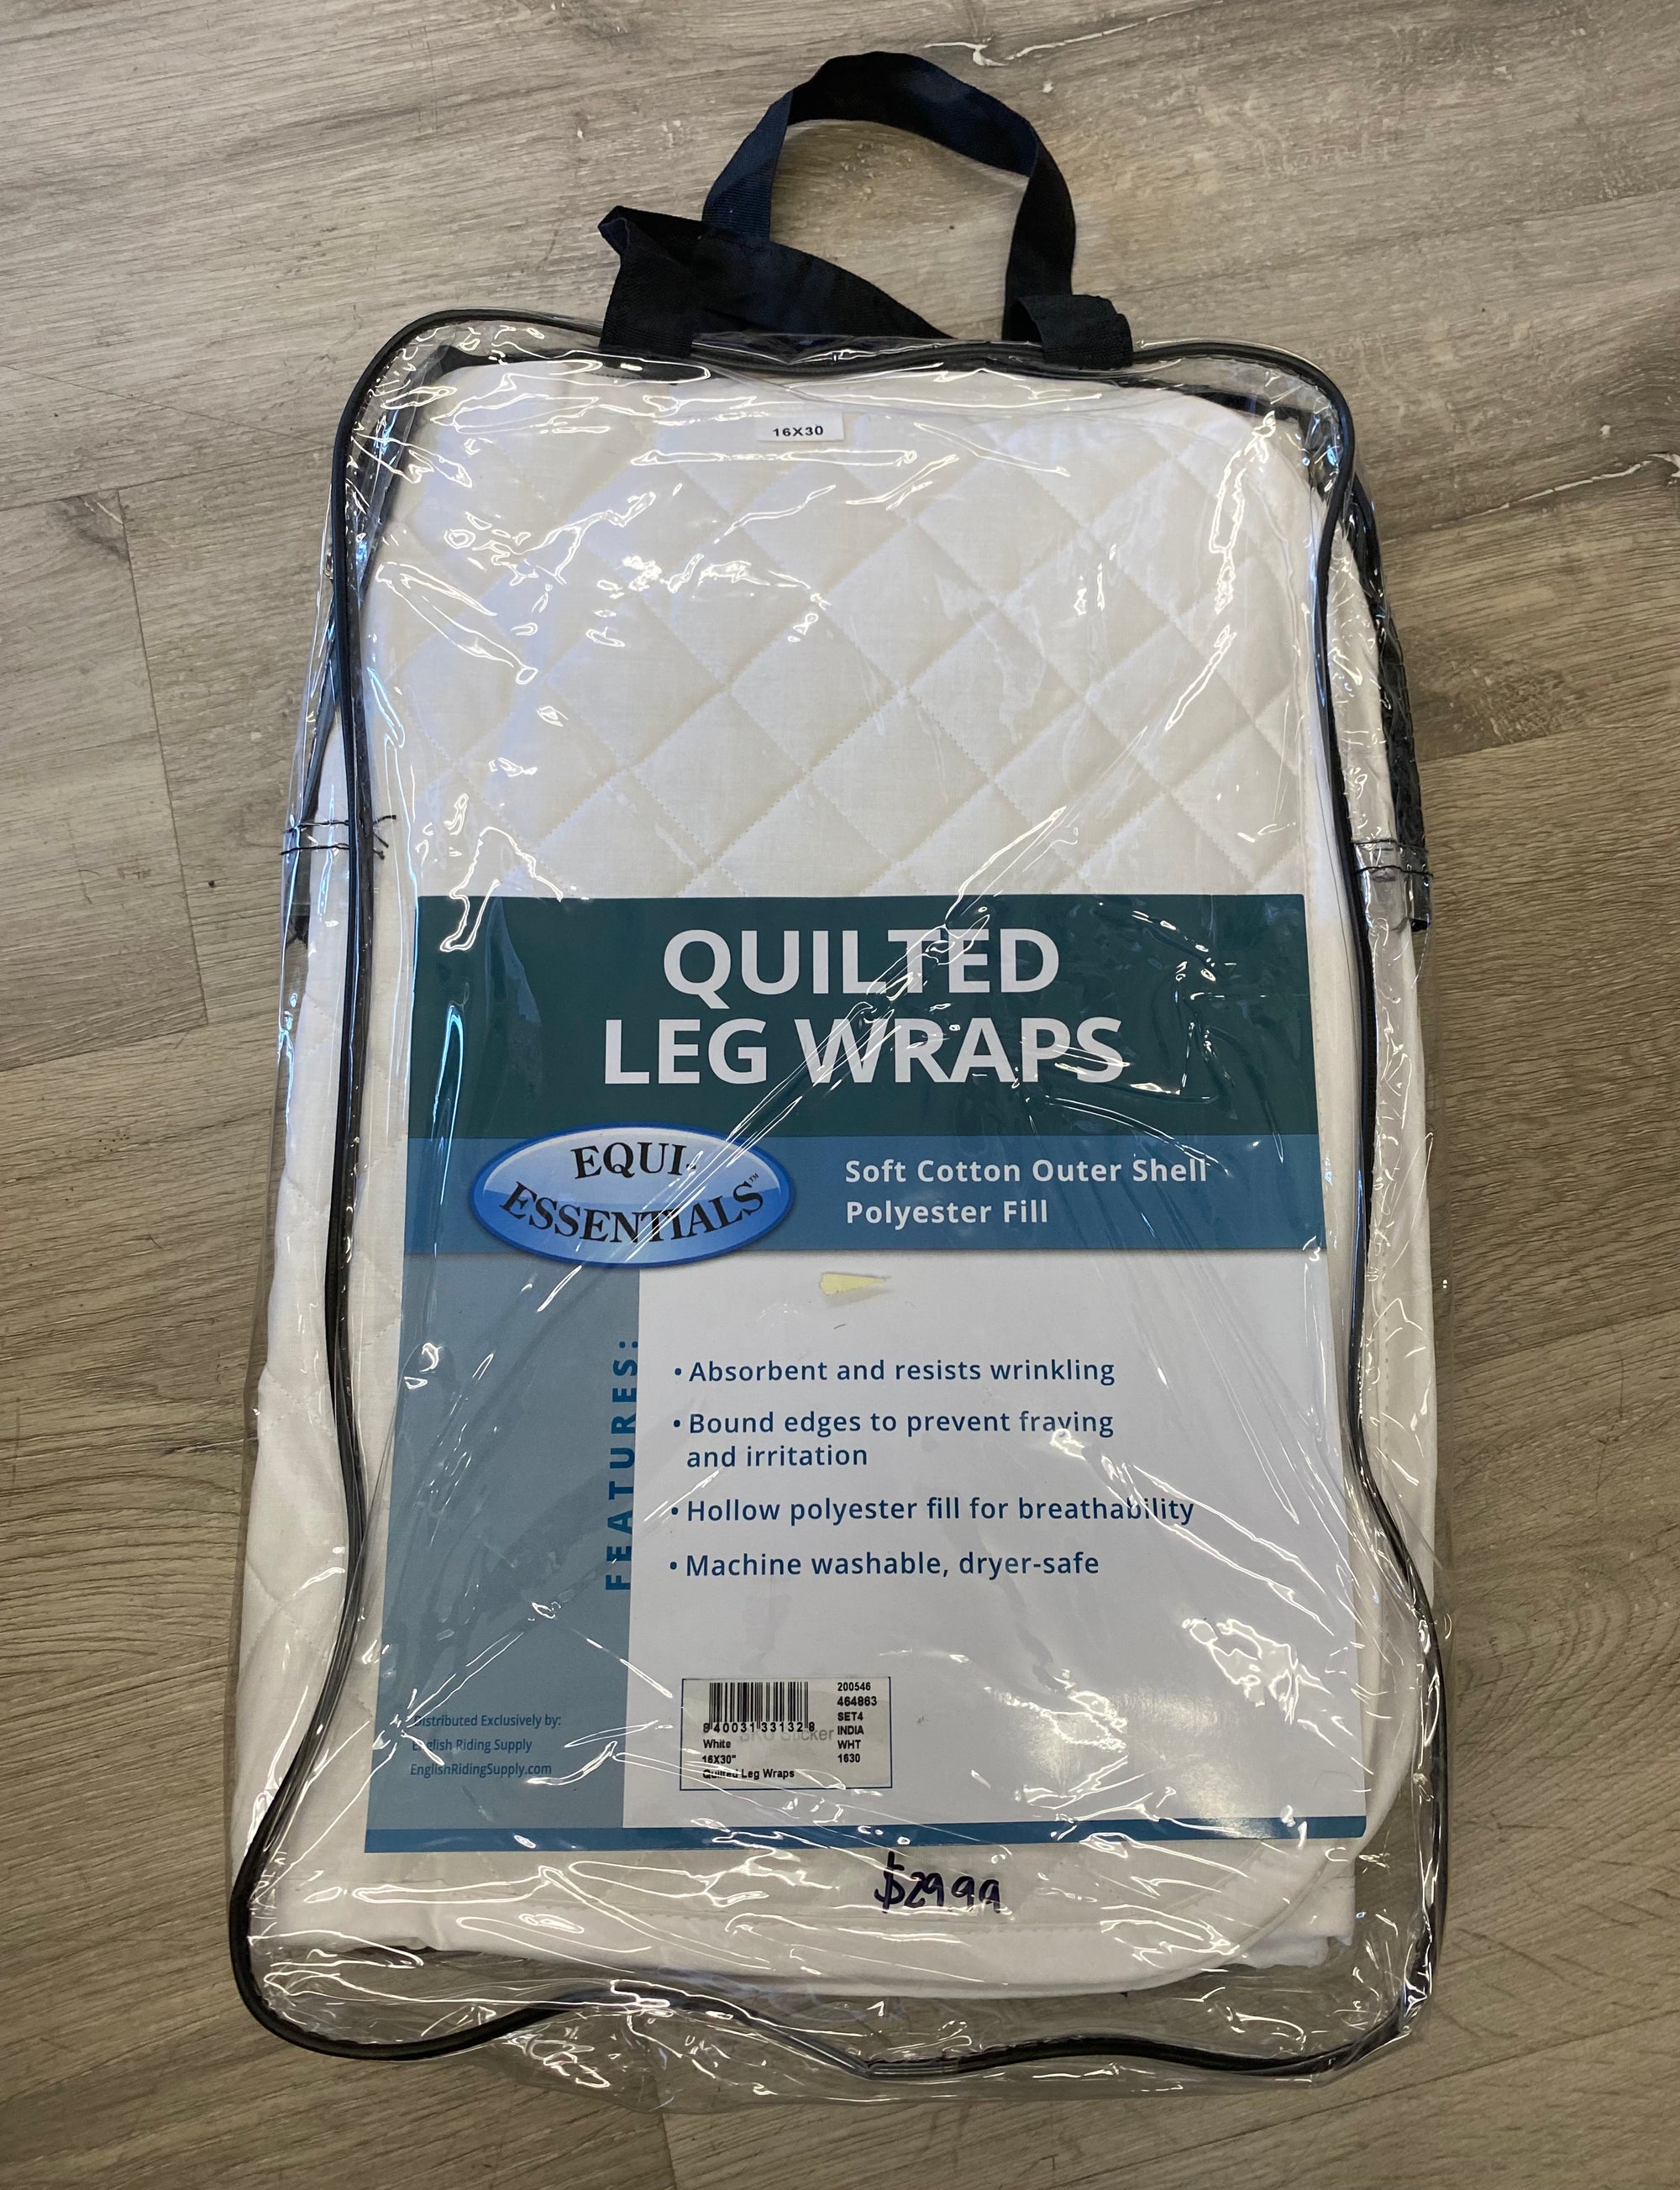 Equi-Essentials Quilted Leg Wraps